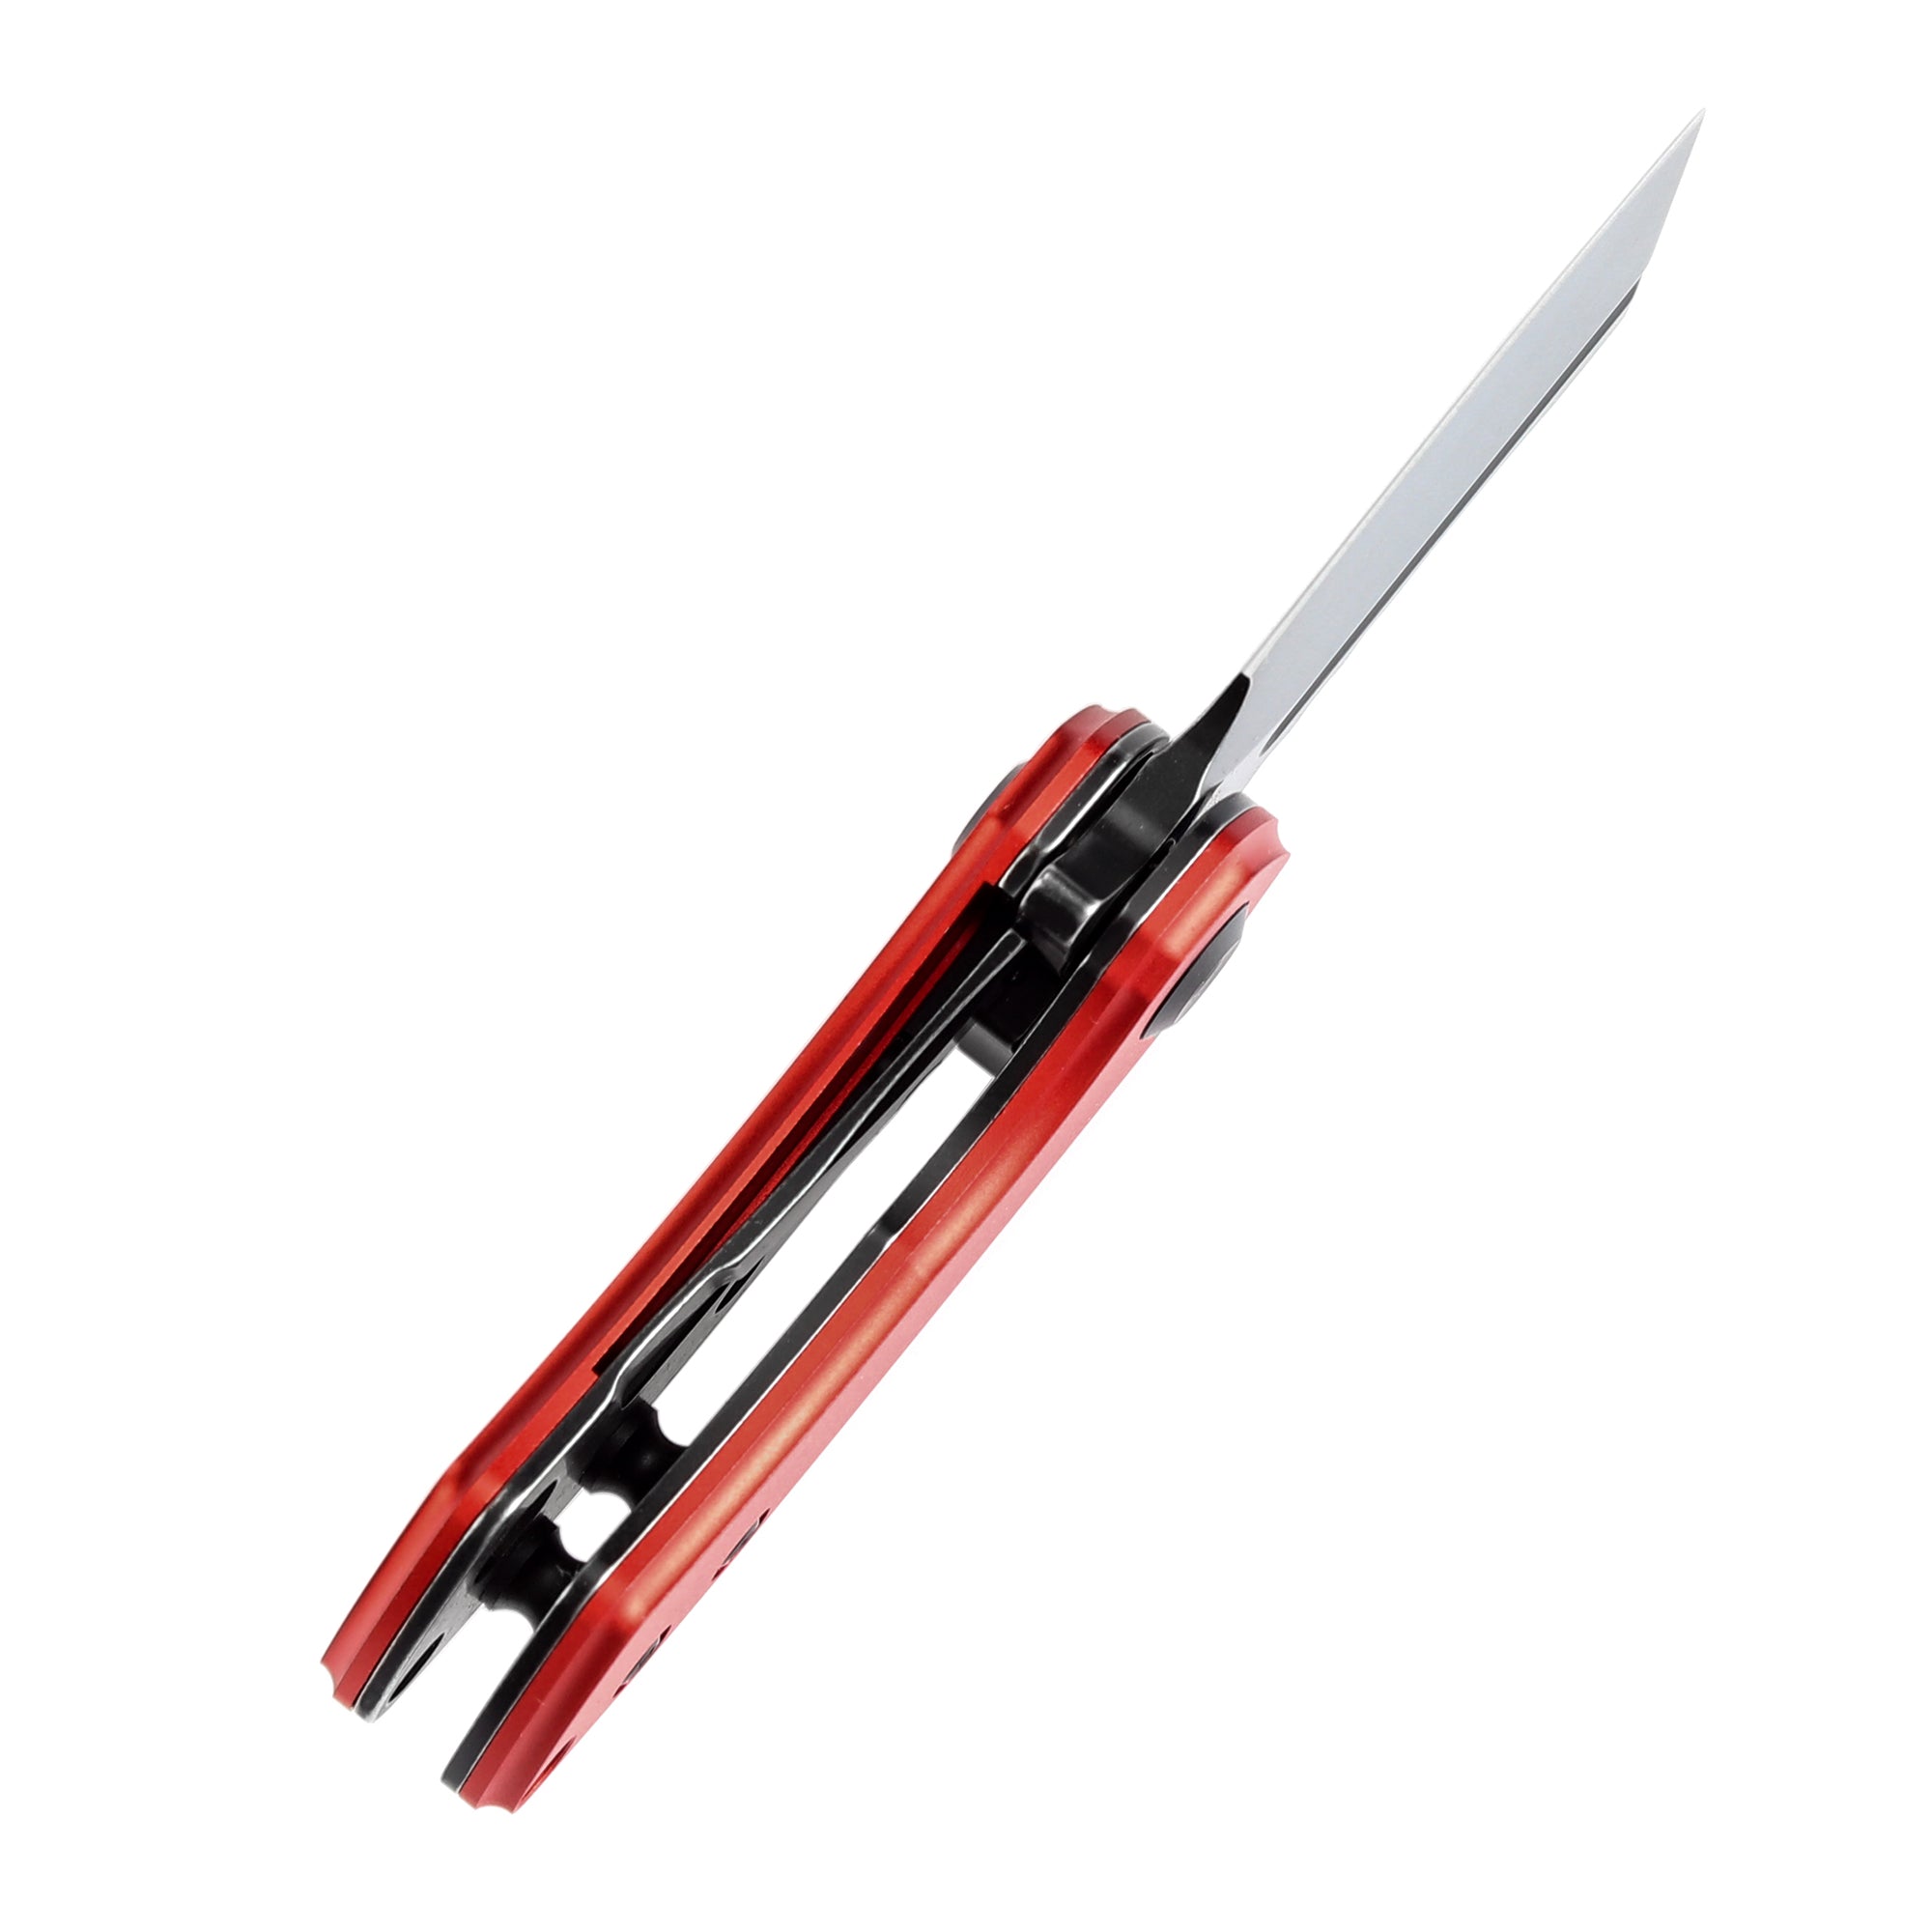 Kansept Mini Korvid Flipper Knife T3030P3 154CM Blade Aluminum Handle